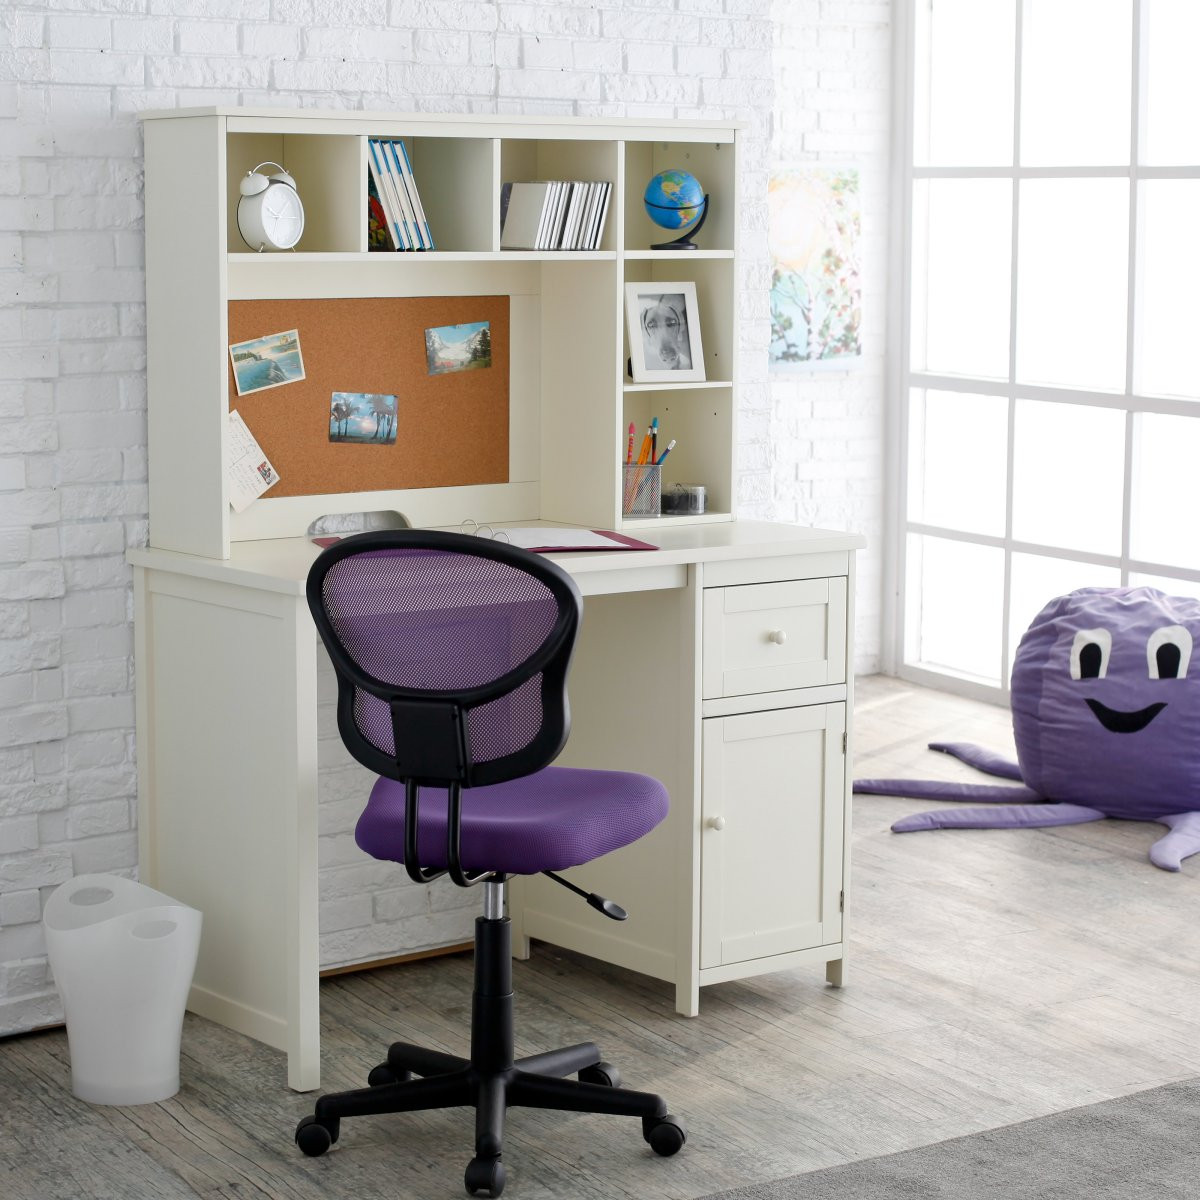 Kids Bedroom Desk
 Start – lineare desk for bedroom sets – clever